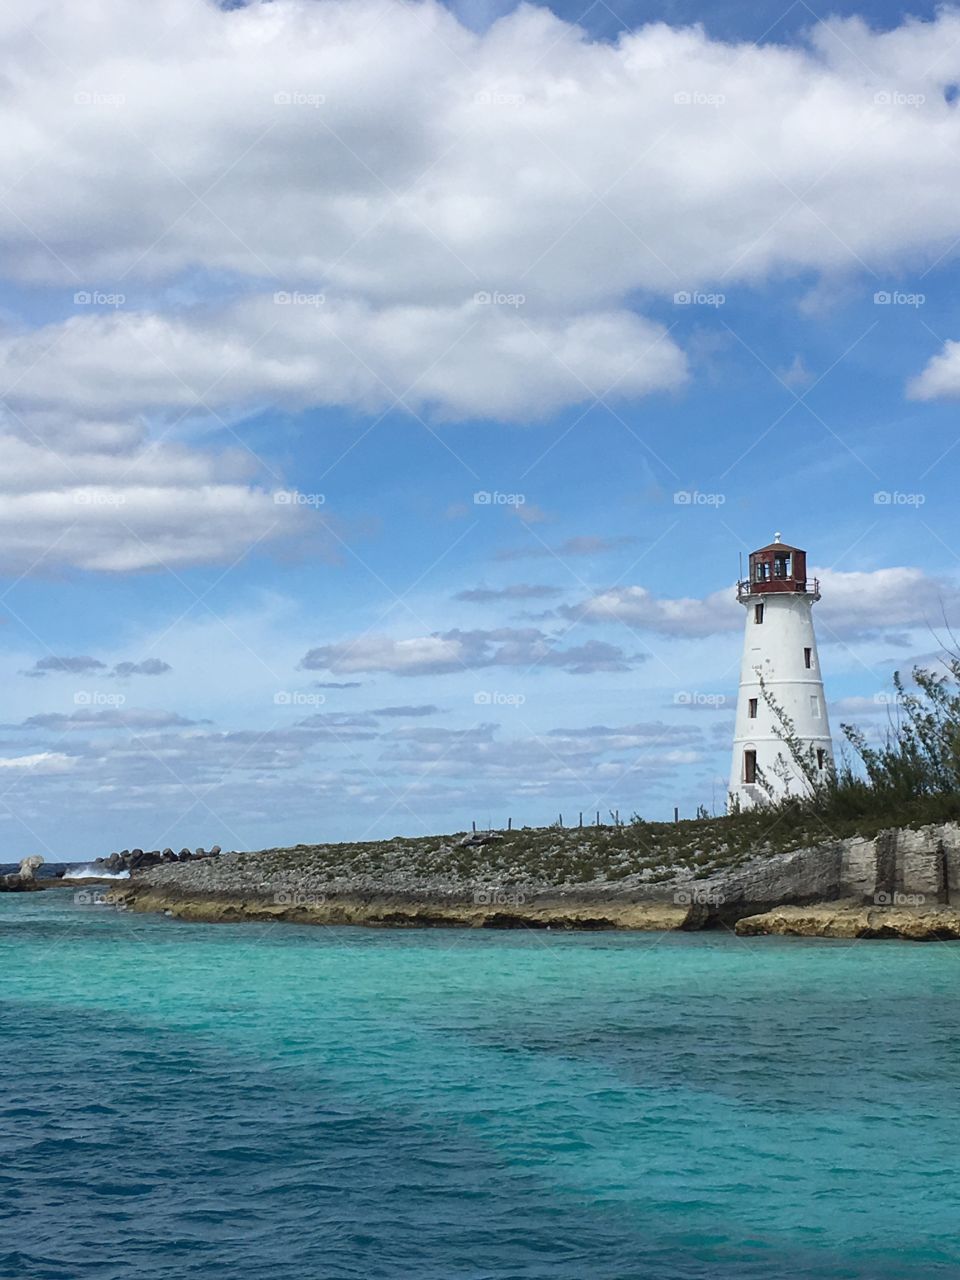 Lighthouse, Bahamas
